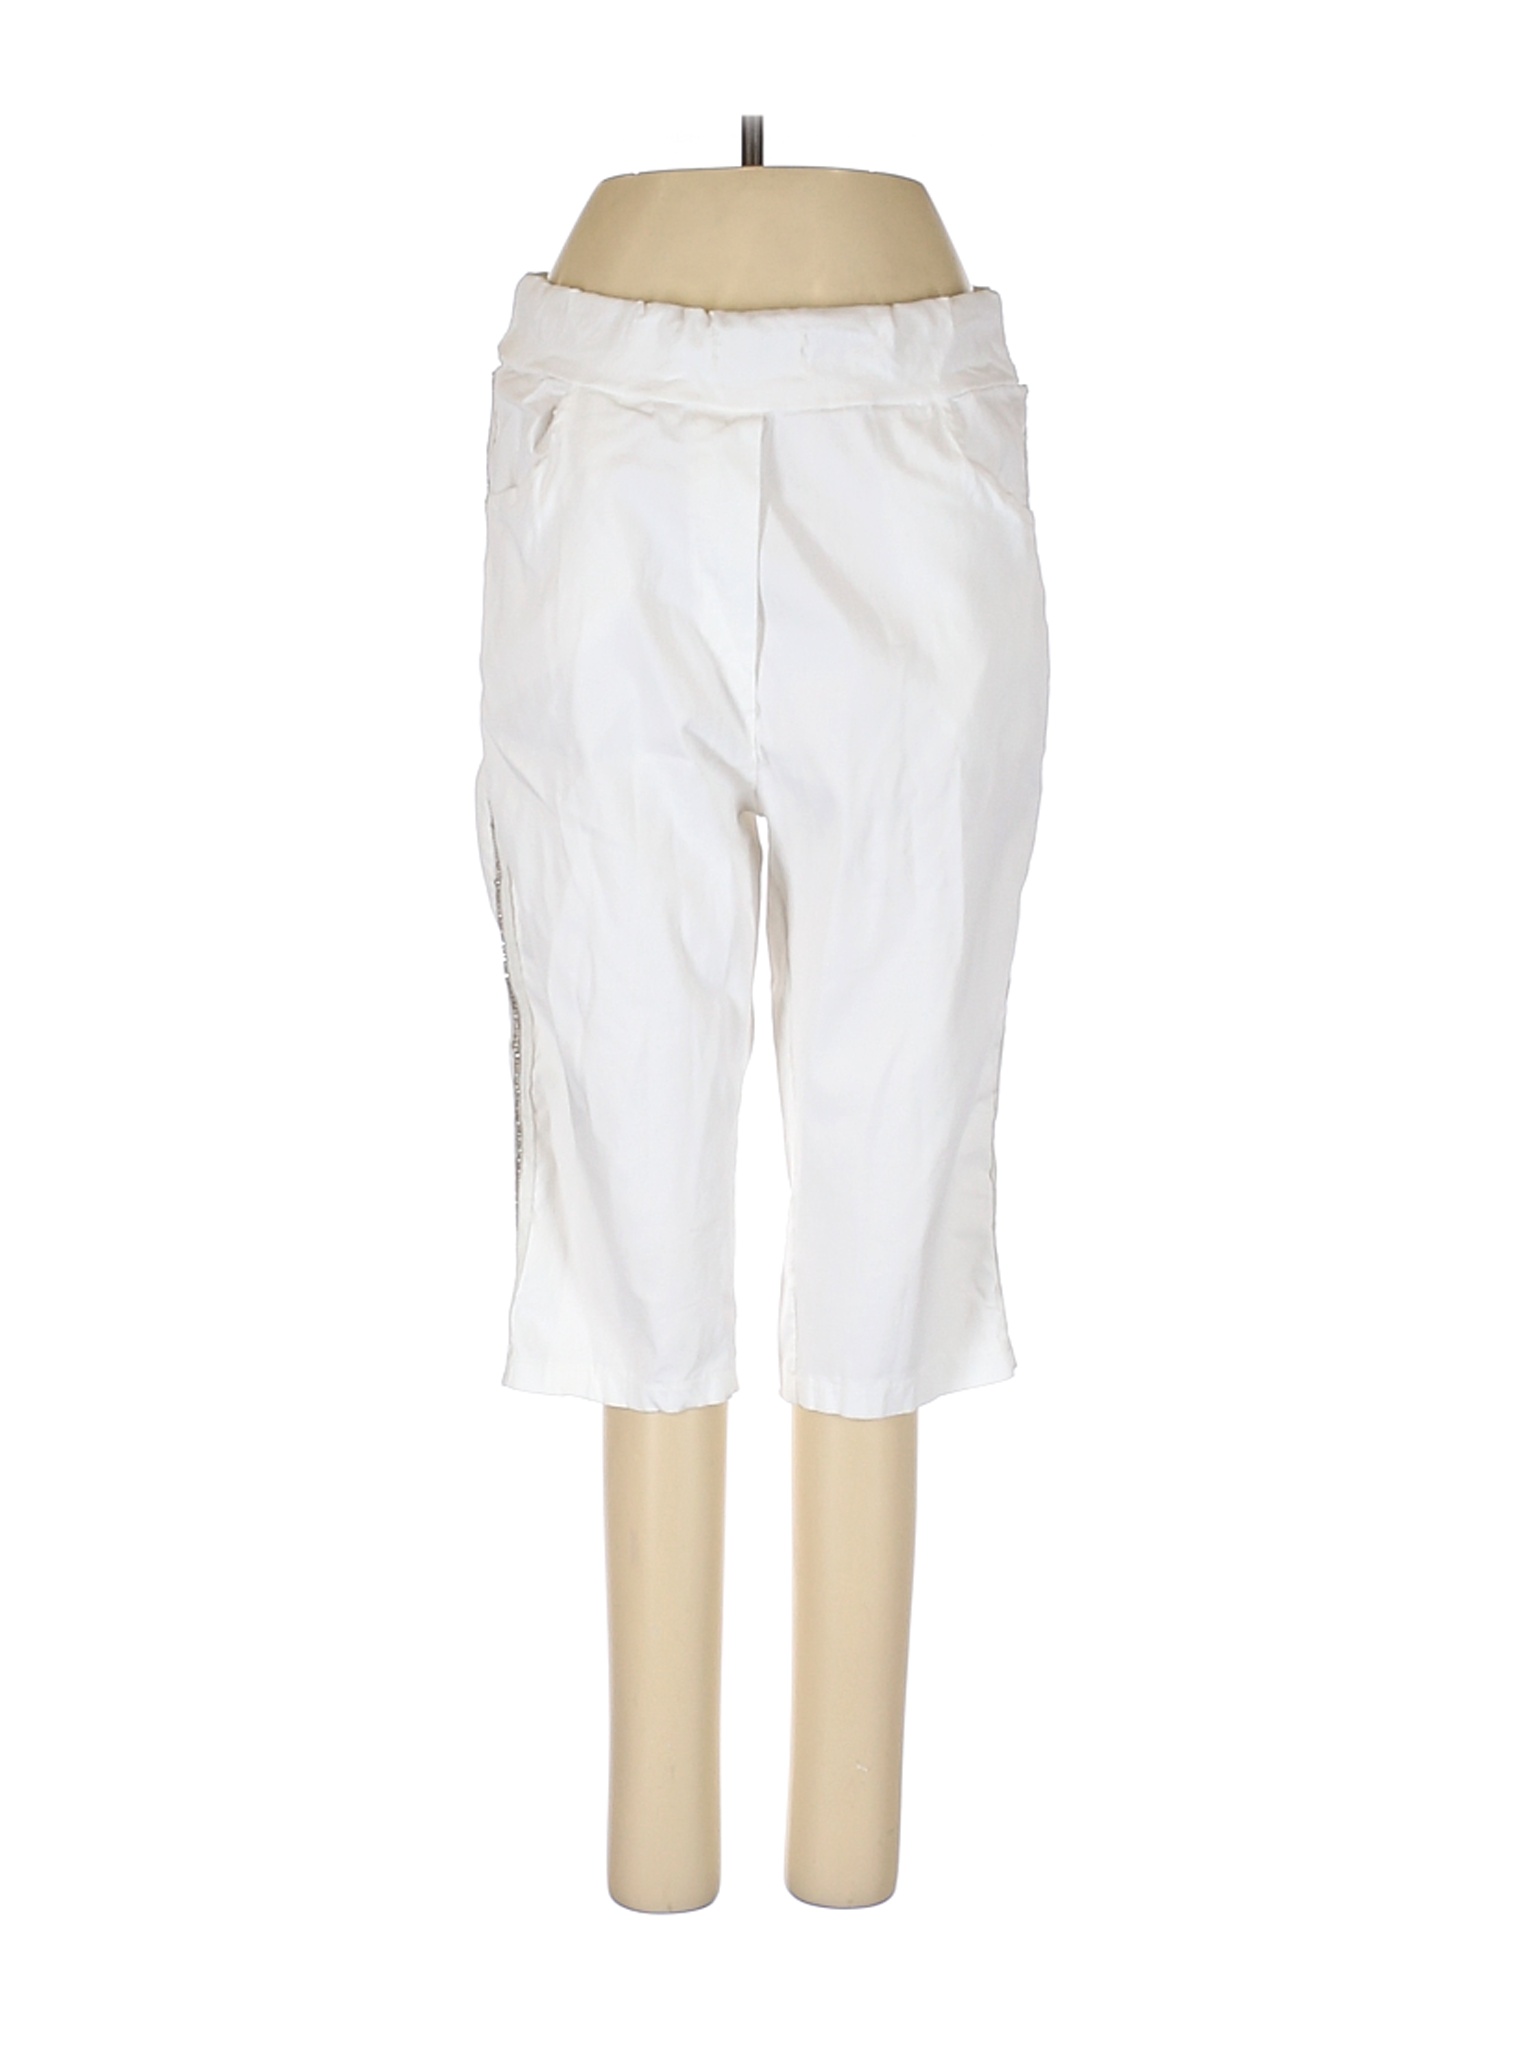 Venti6 Women White Casual Pants S | eBay